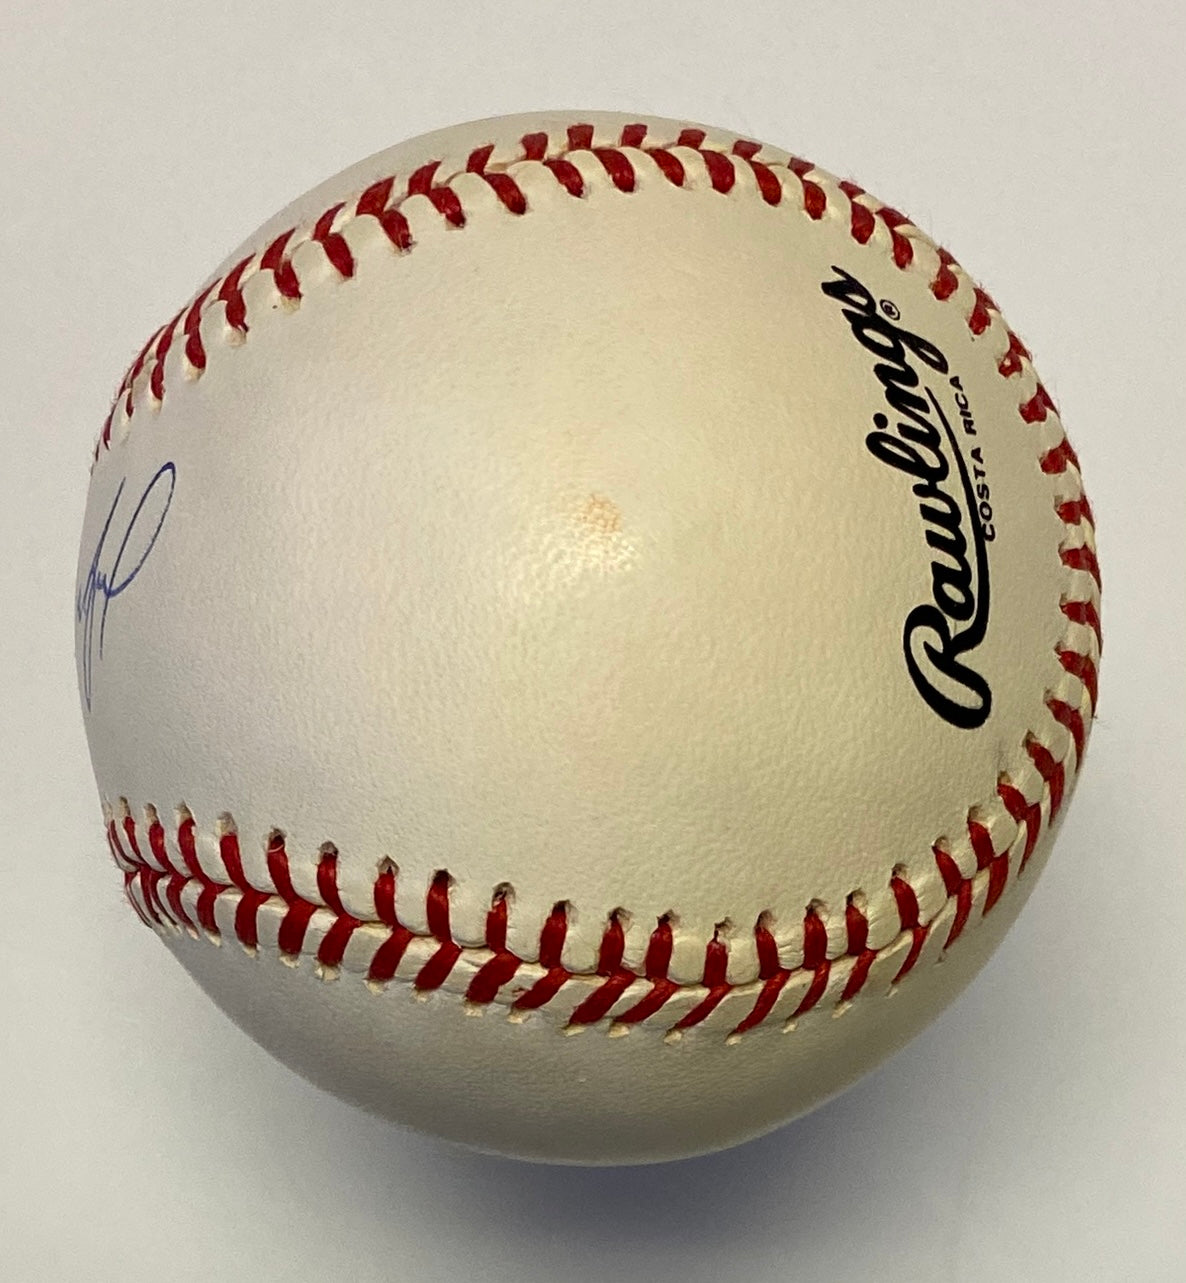 Sandy Koufax Signed Baseball Authenticated By JSA LOA